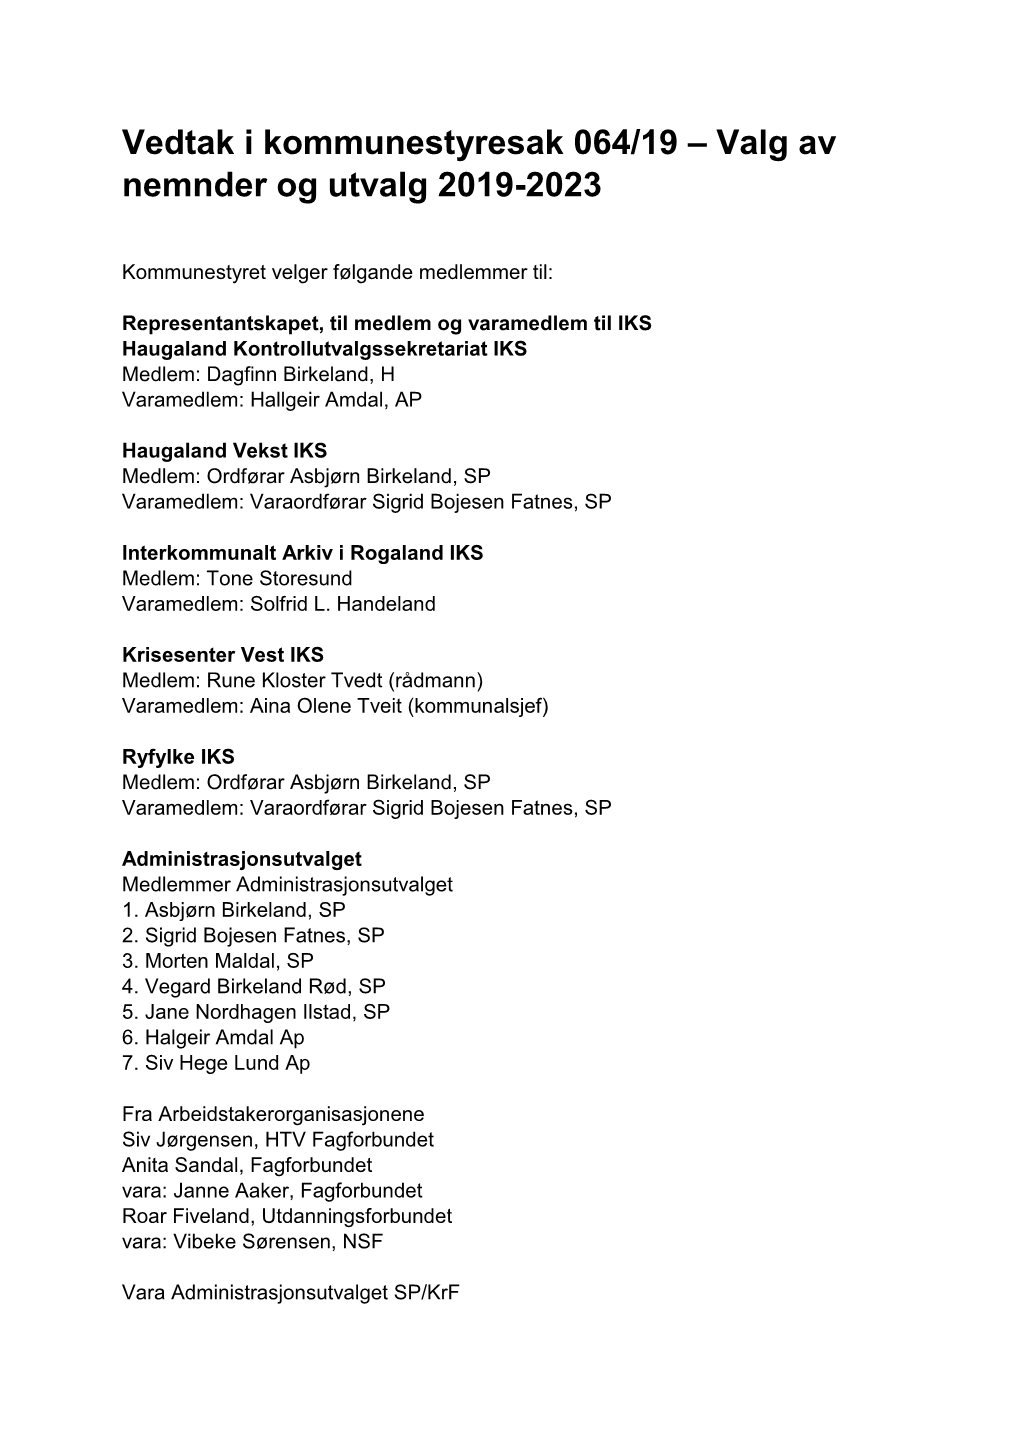 Vedtak I Kommunestyresak 064/19 – Valg Av Nemnder Og Utvalg 2019-2023